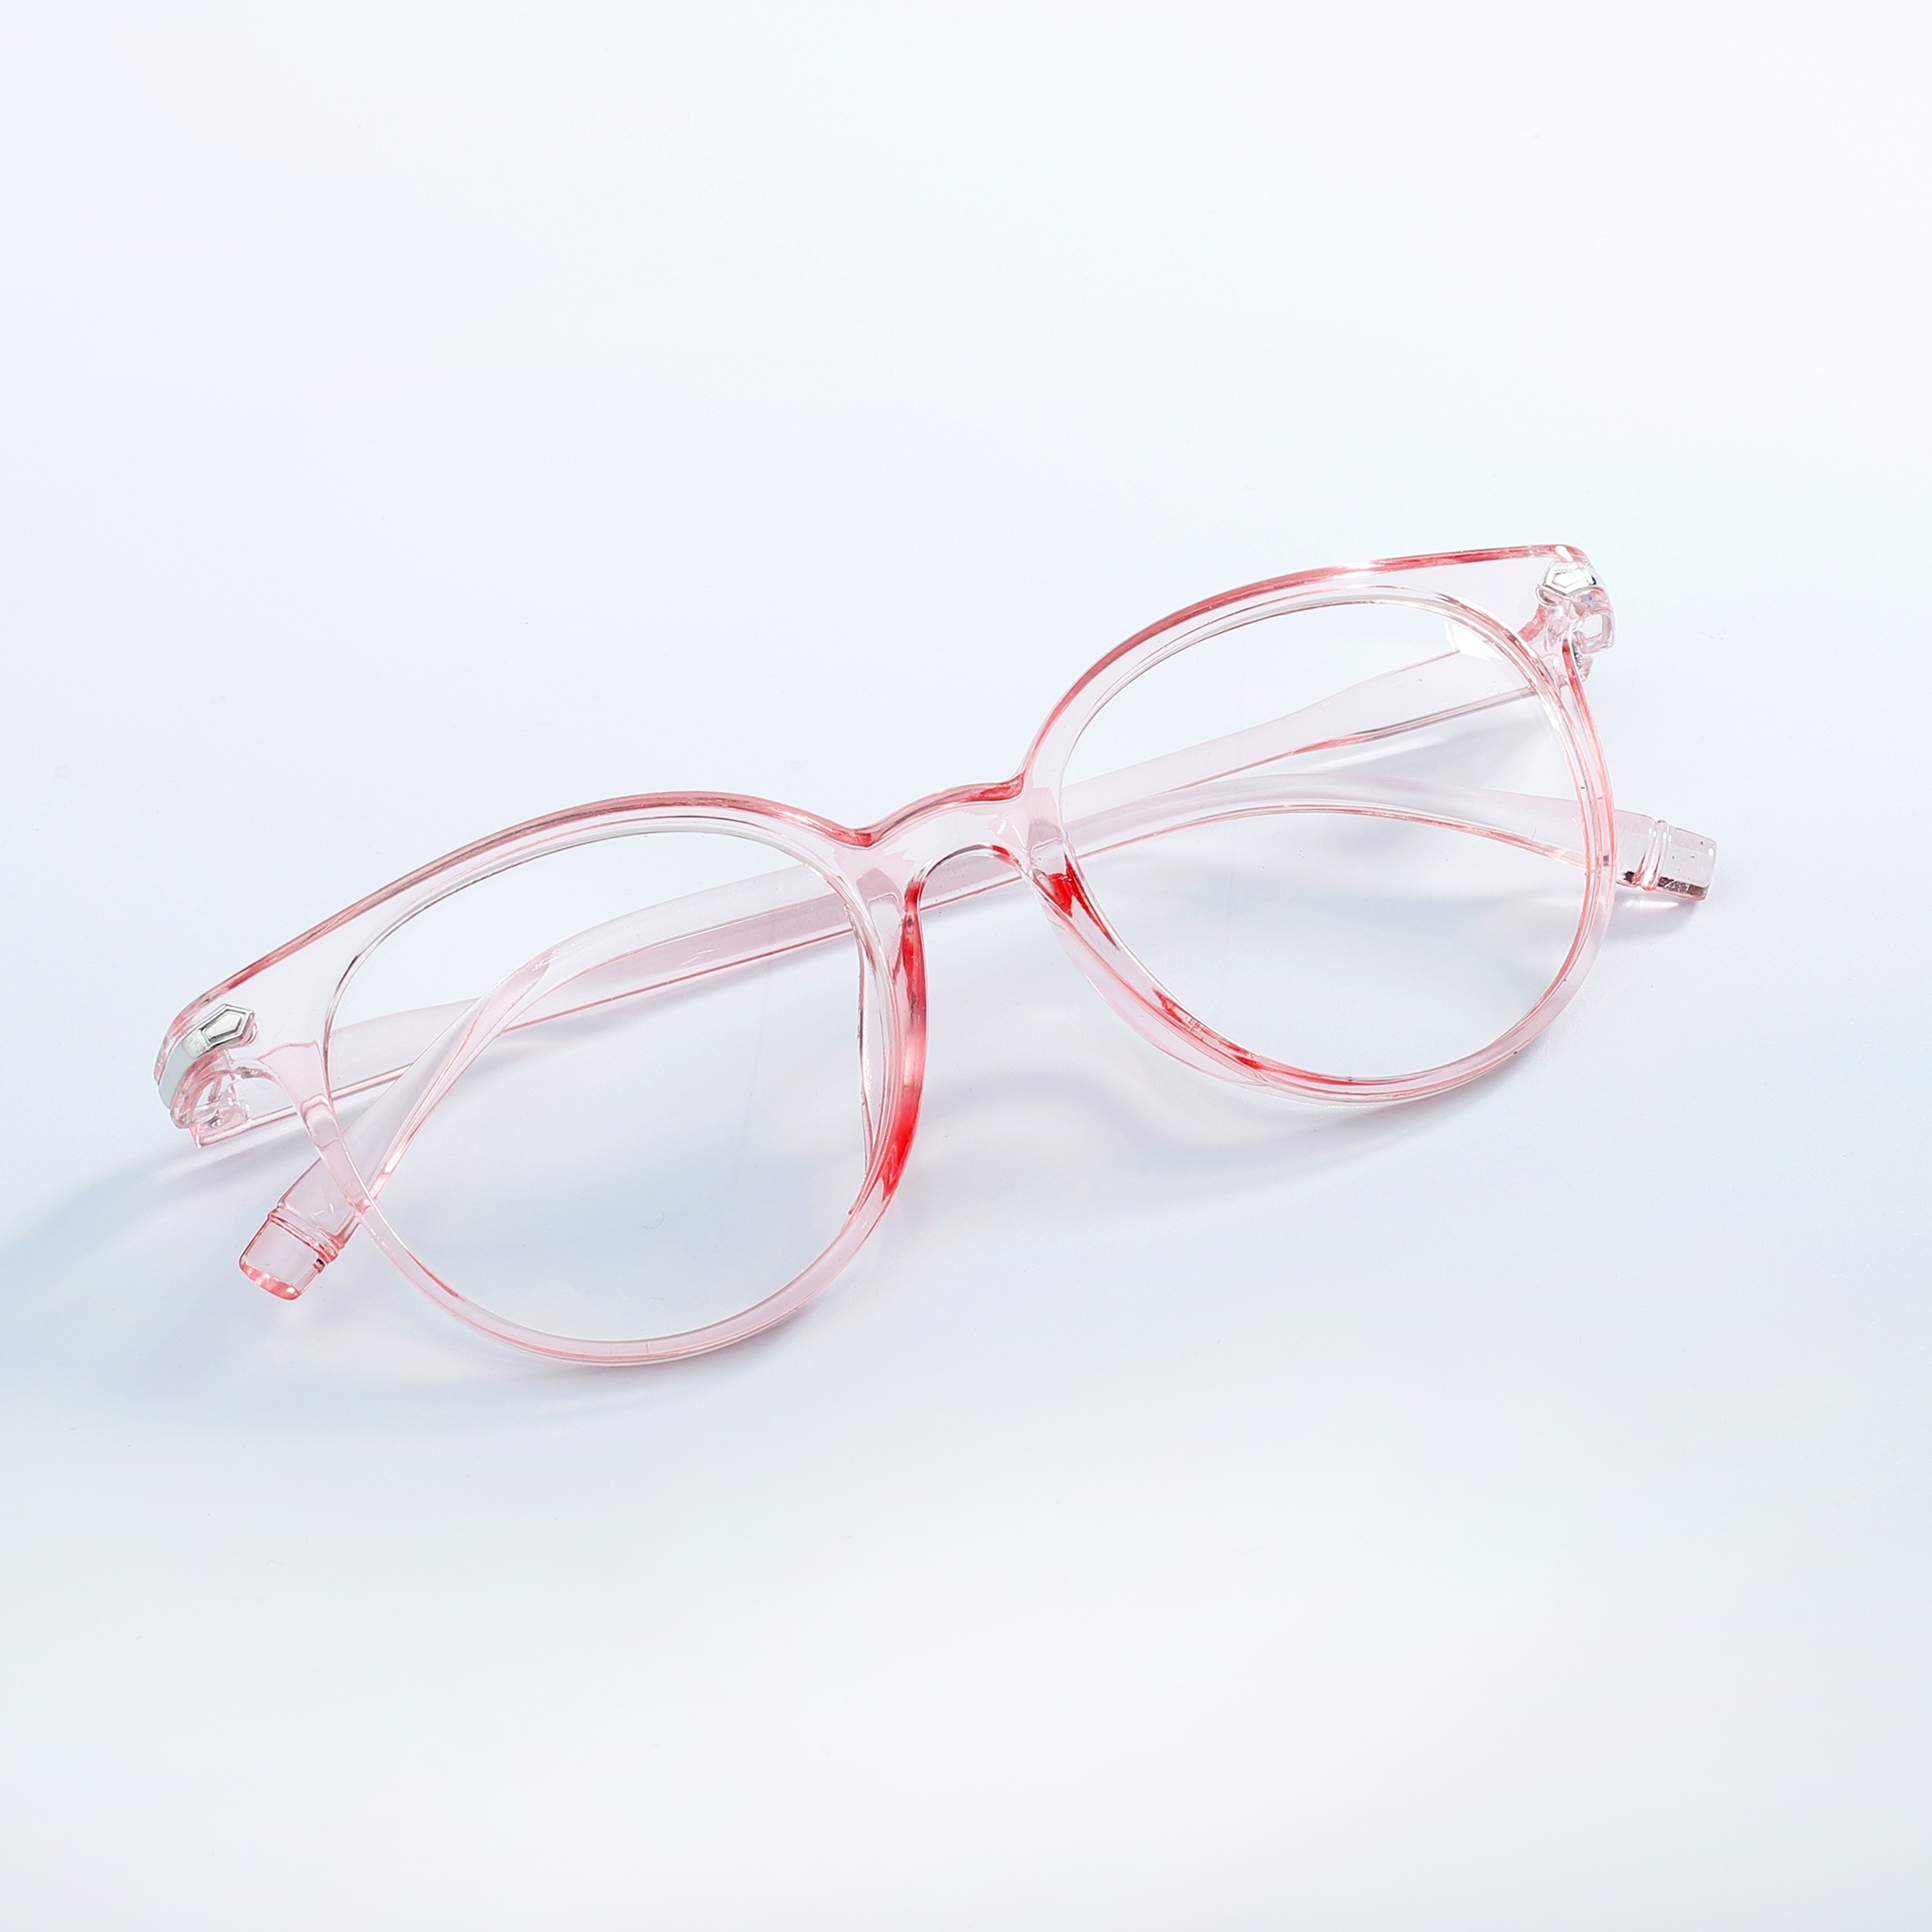 Niedliche Brille - Kostenloser Versand Für Neue Benutzer - Temu